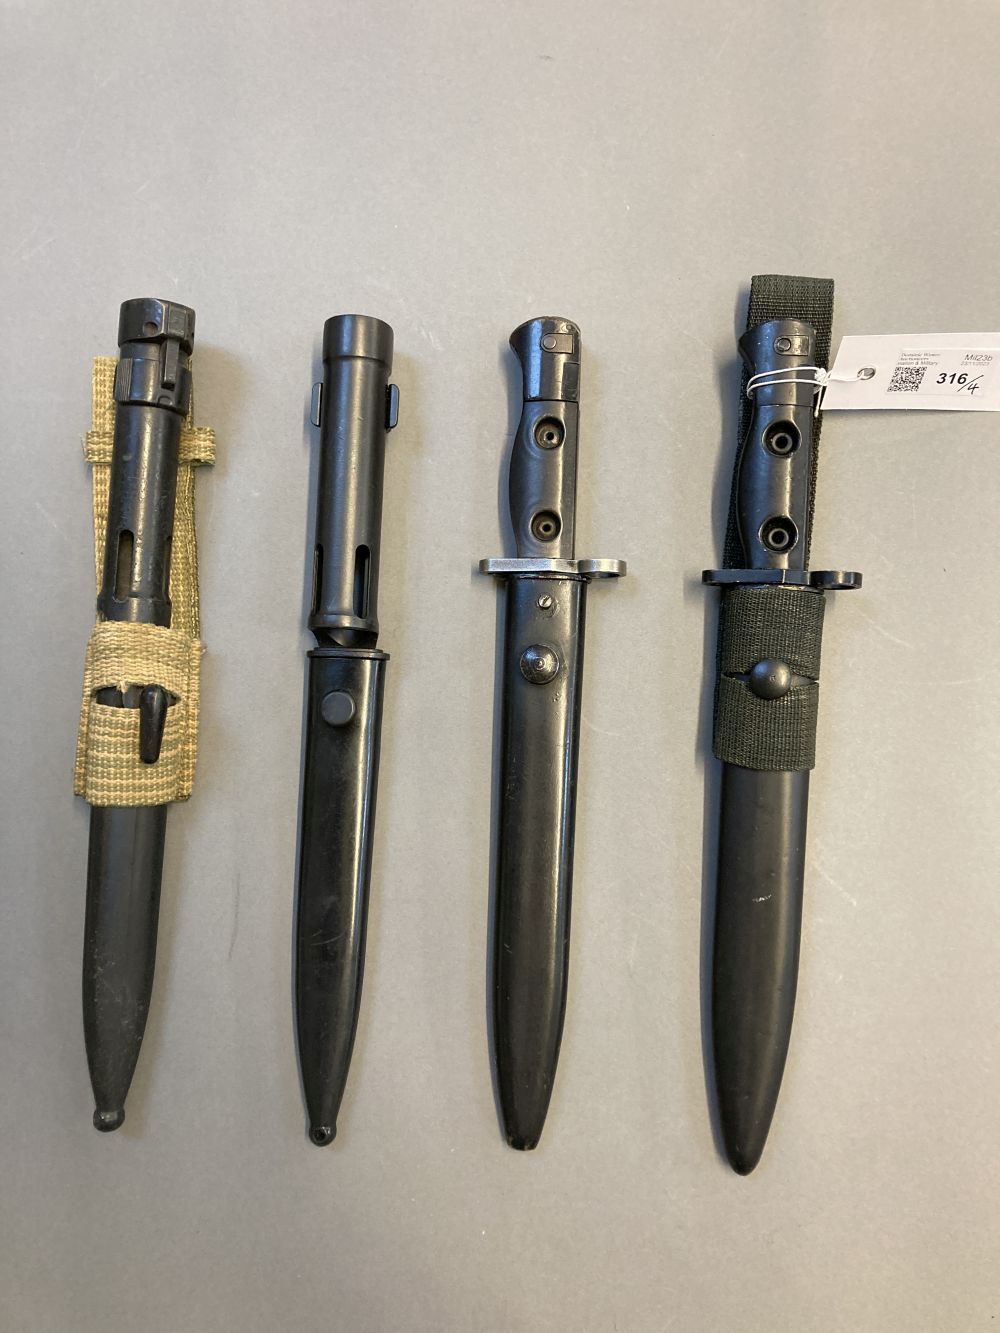 Bayonets. Belgium bayonets, circa 1960s